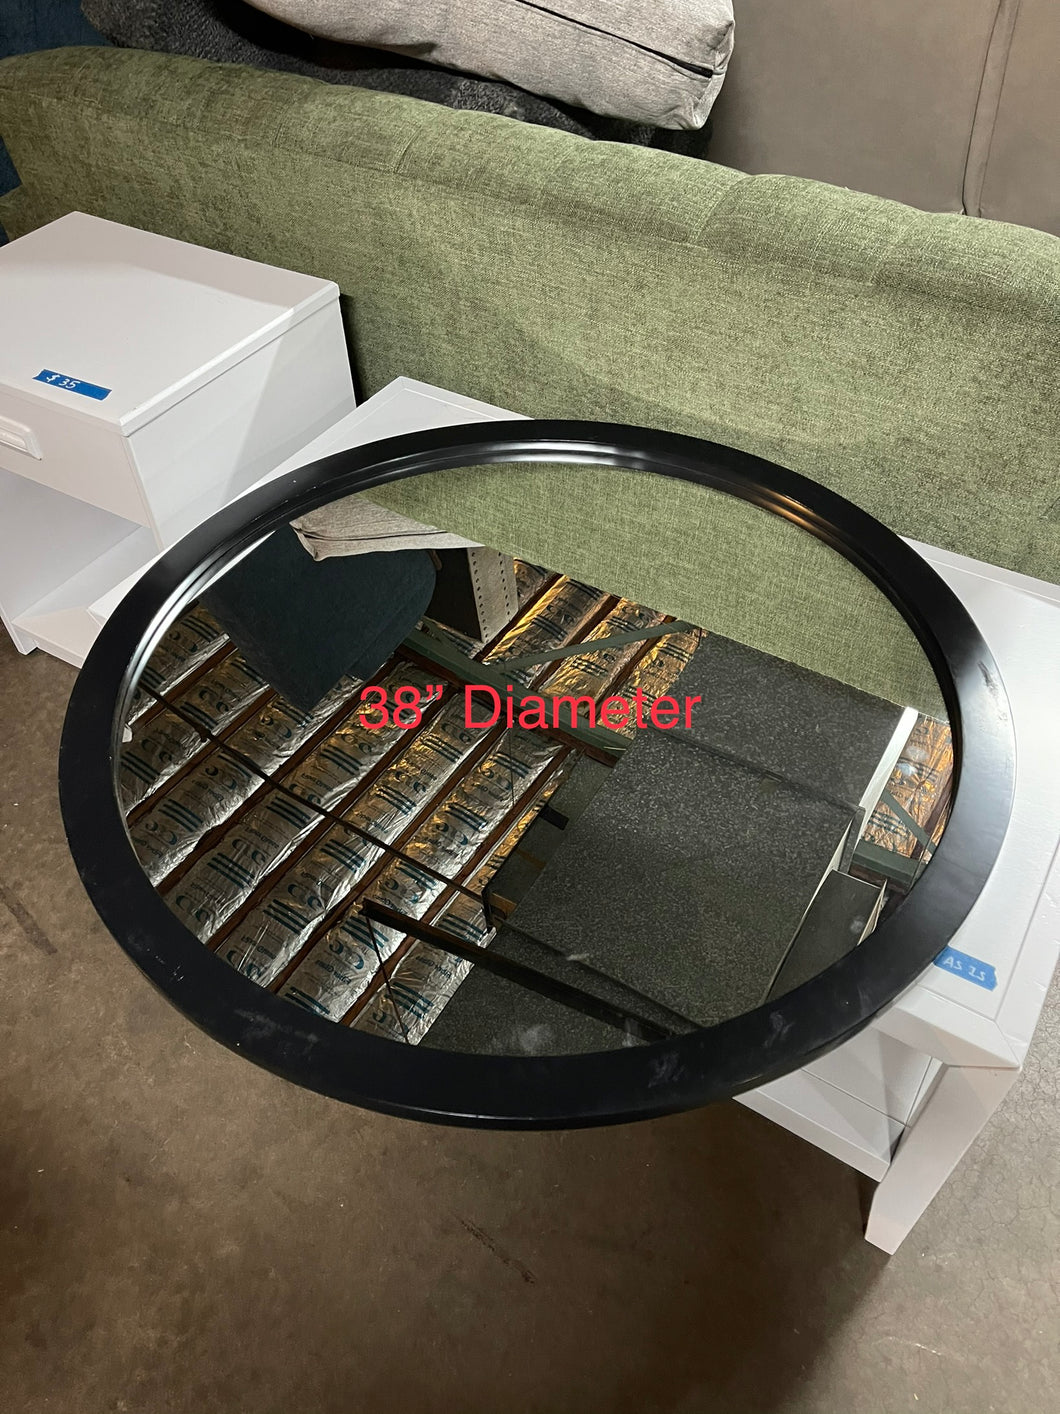 Round mirror 38” diameter